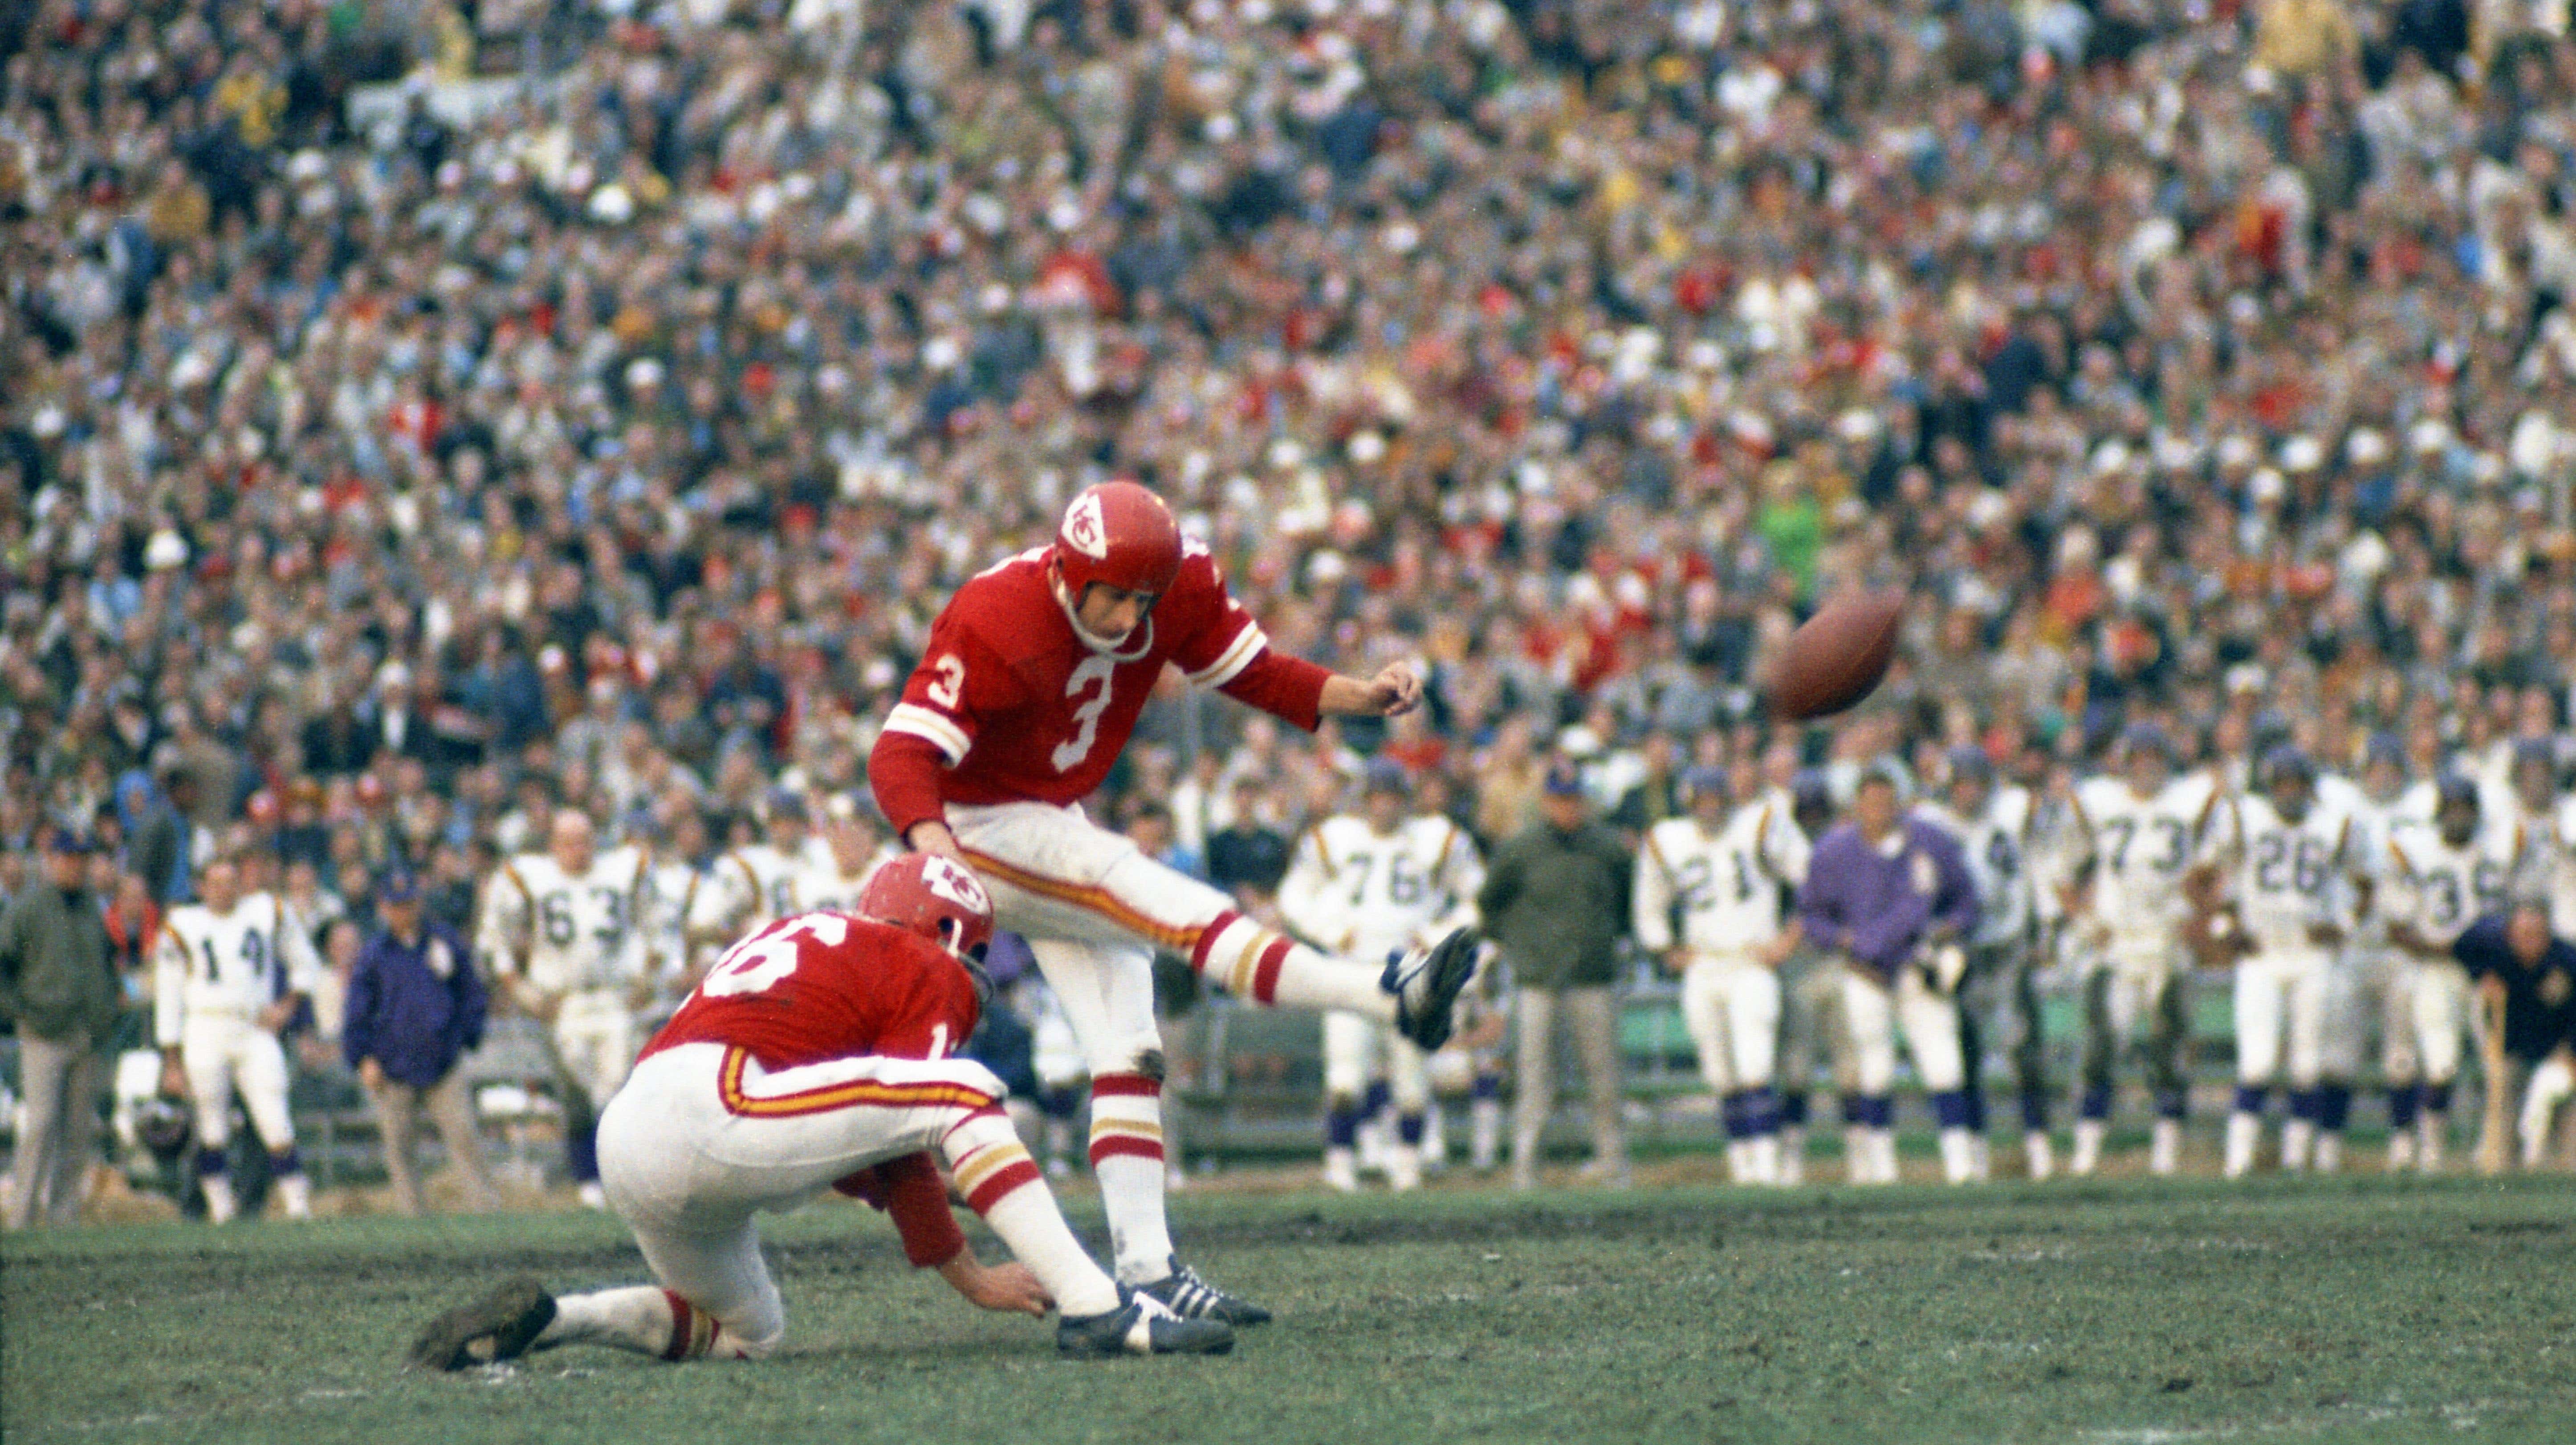 Imagen para el artículo titulado Los mejores momentos individuales del Super Bowl de los jugadores de los Chiefs y los 49ers